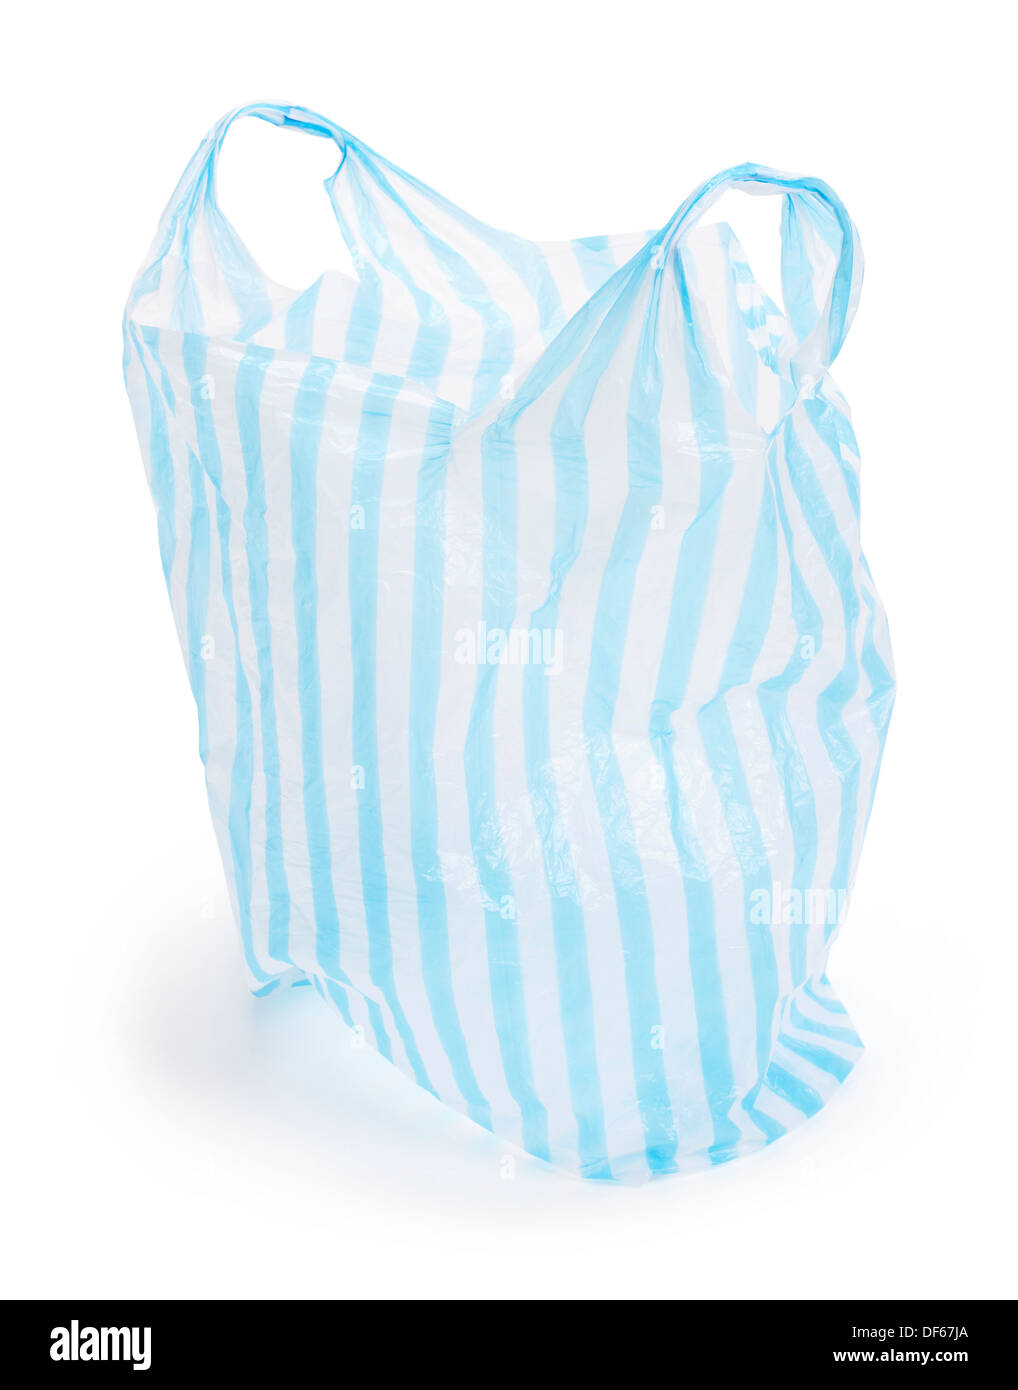 Rayas blancas y azules shop bolsa de plástico Foto de stock